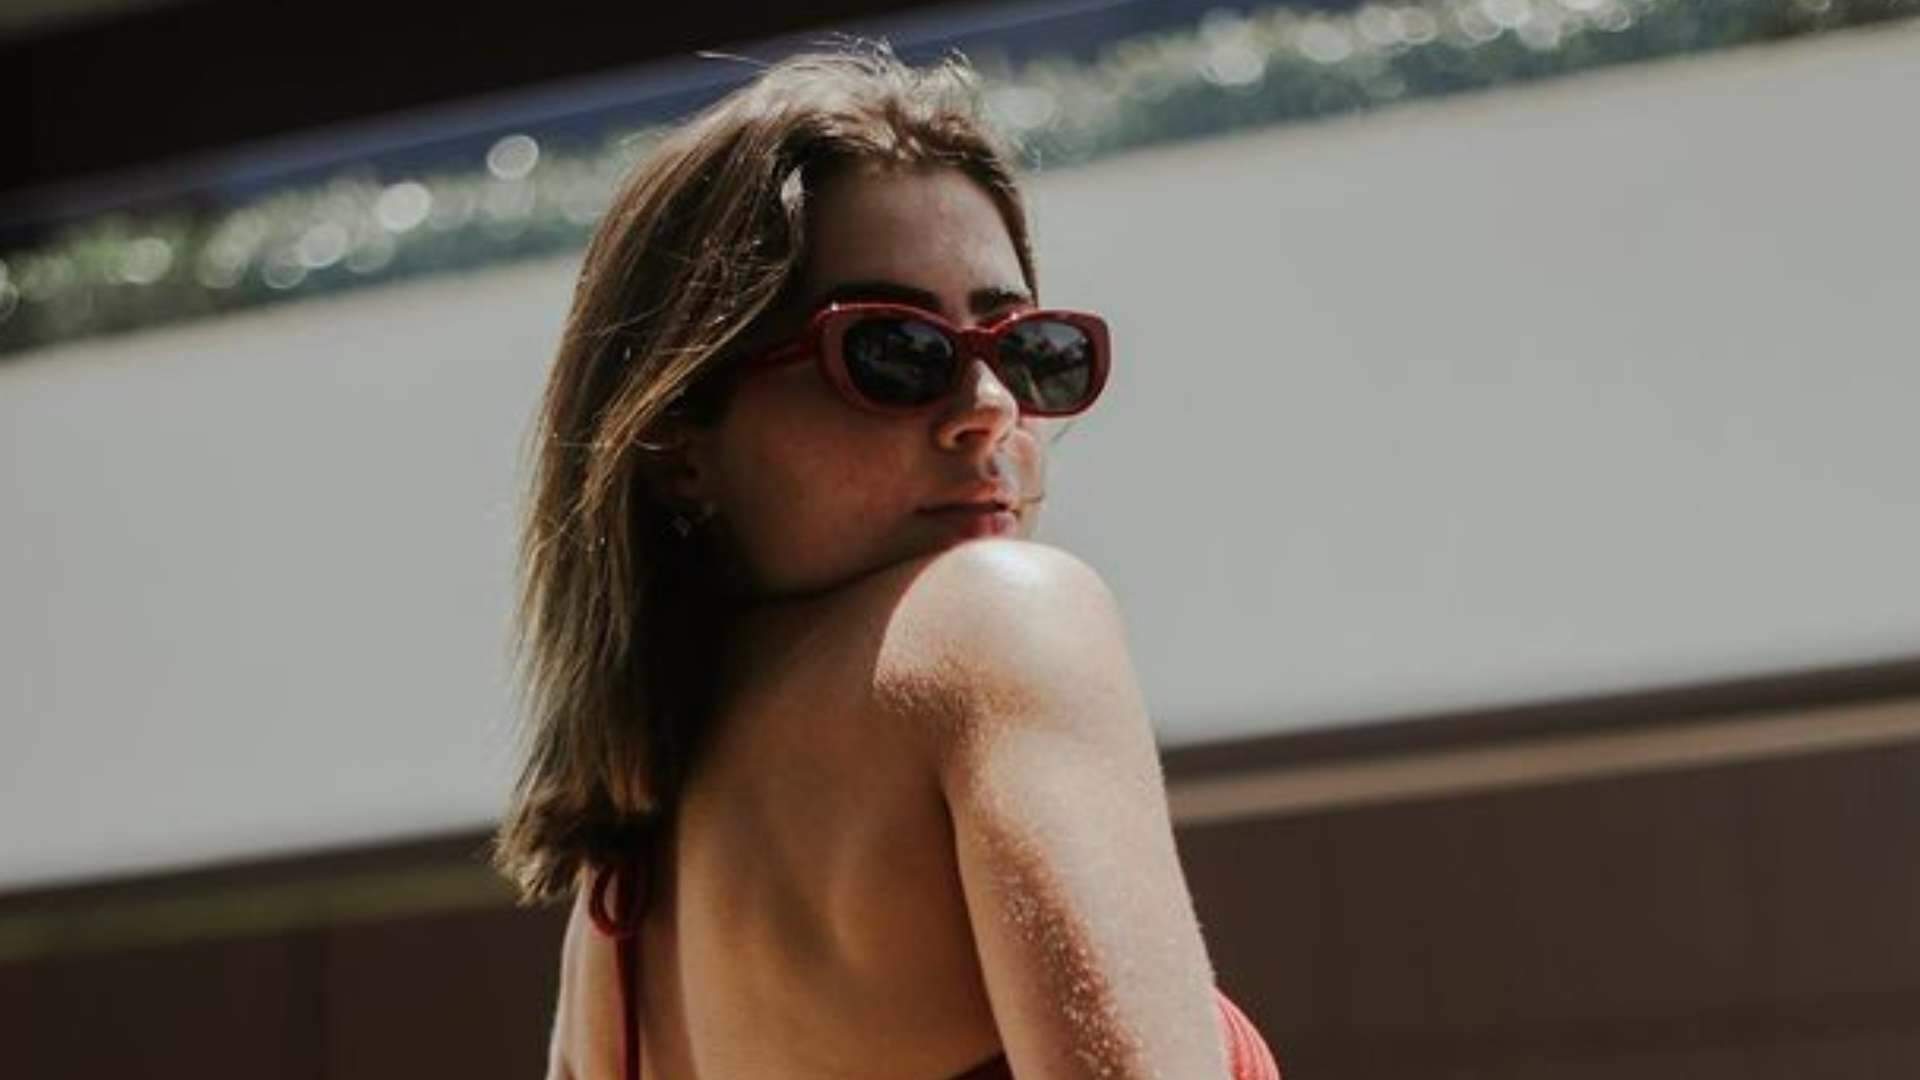 Jade Picon mostra como toma sol no bumbum e formato redondinho choca fãs: “É gigante mesmo!” - Metropolitana FM